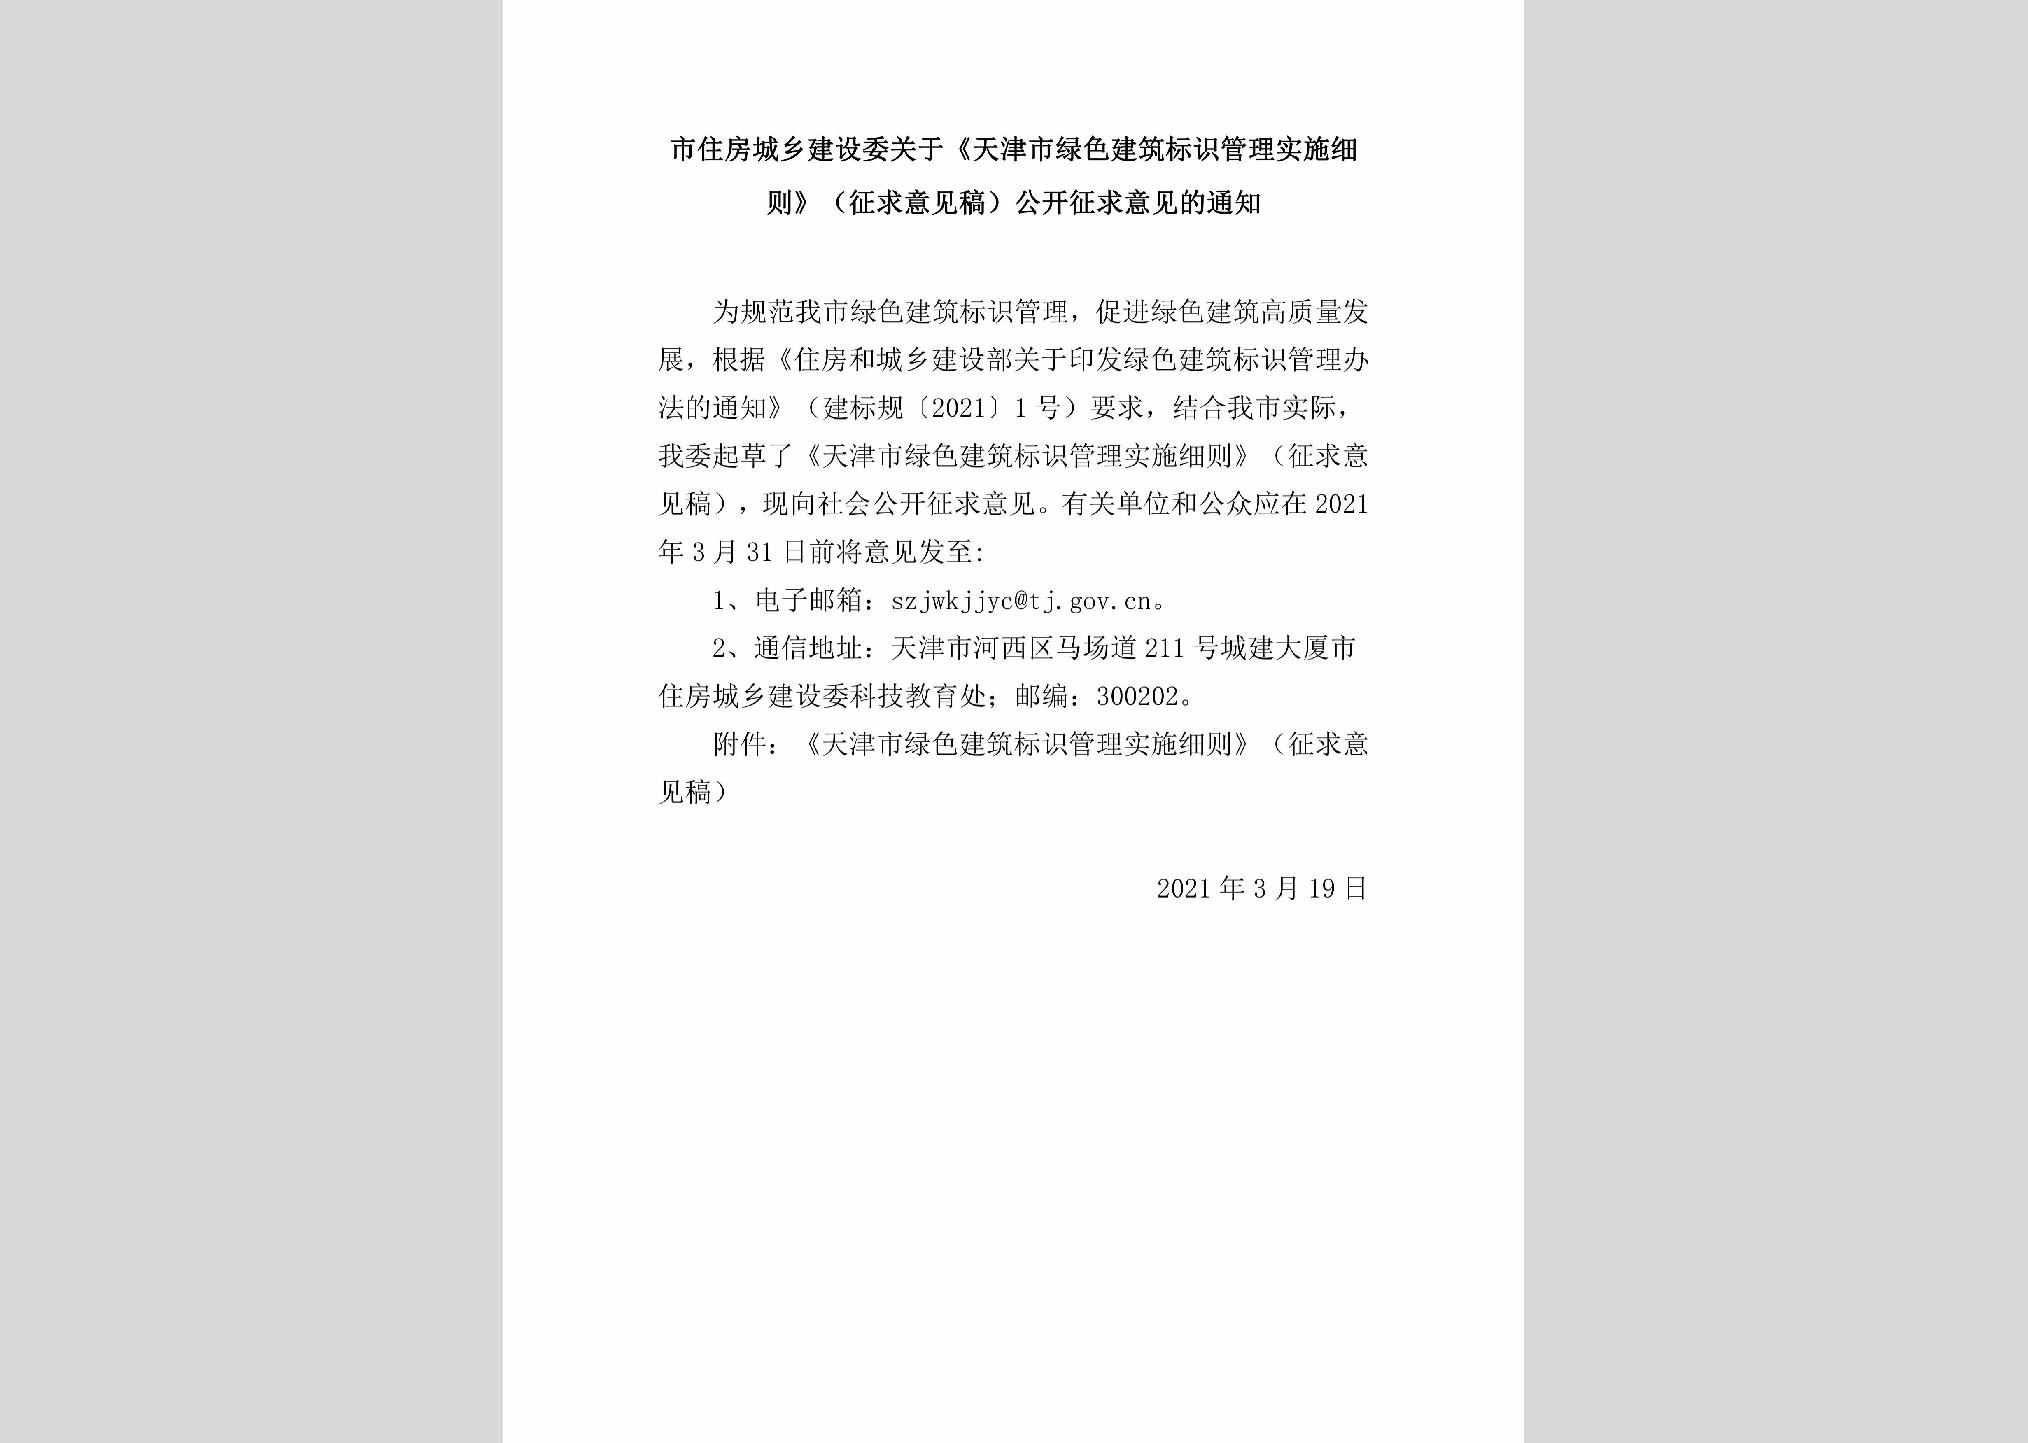 TJ-LSJZBSGL-2021：市住房城乡建设委关于《天津市绿色建筑标识管理实施细则》（征求意见稿）公开征求意见的通知